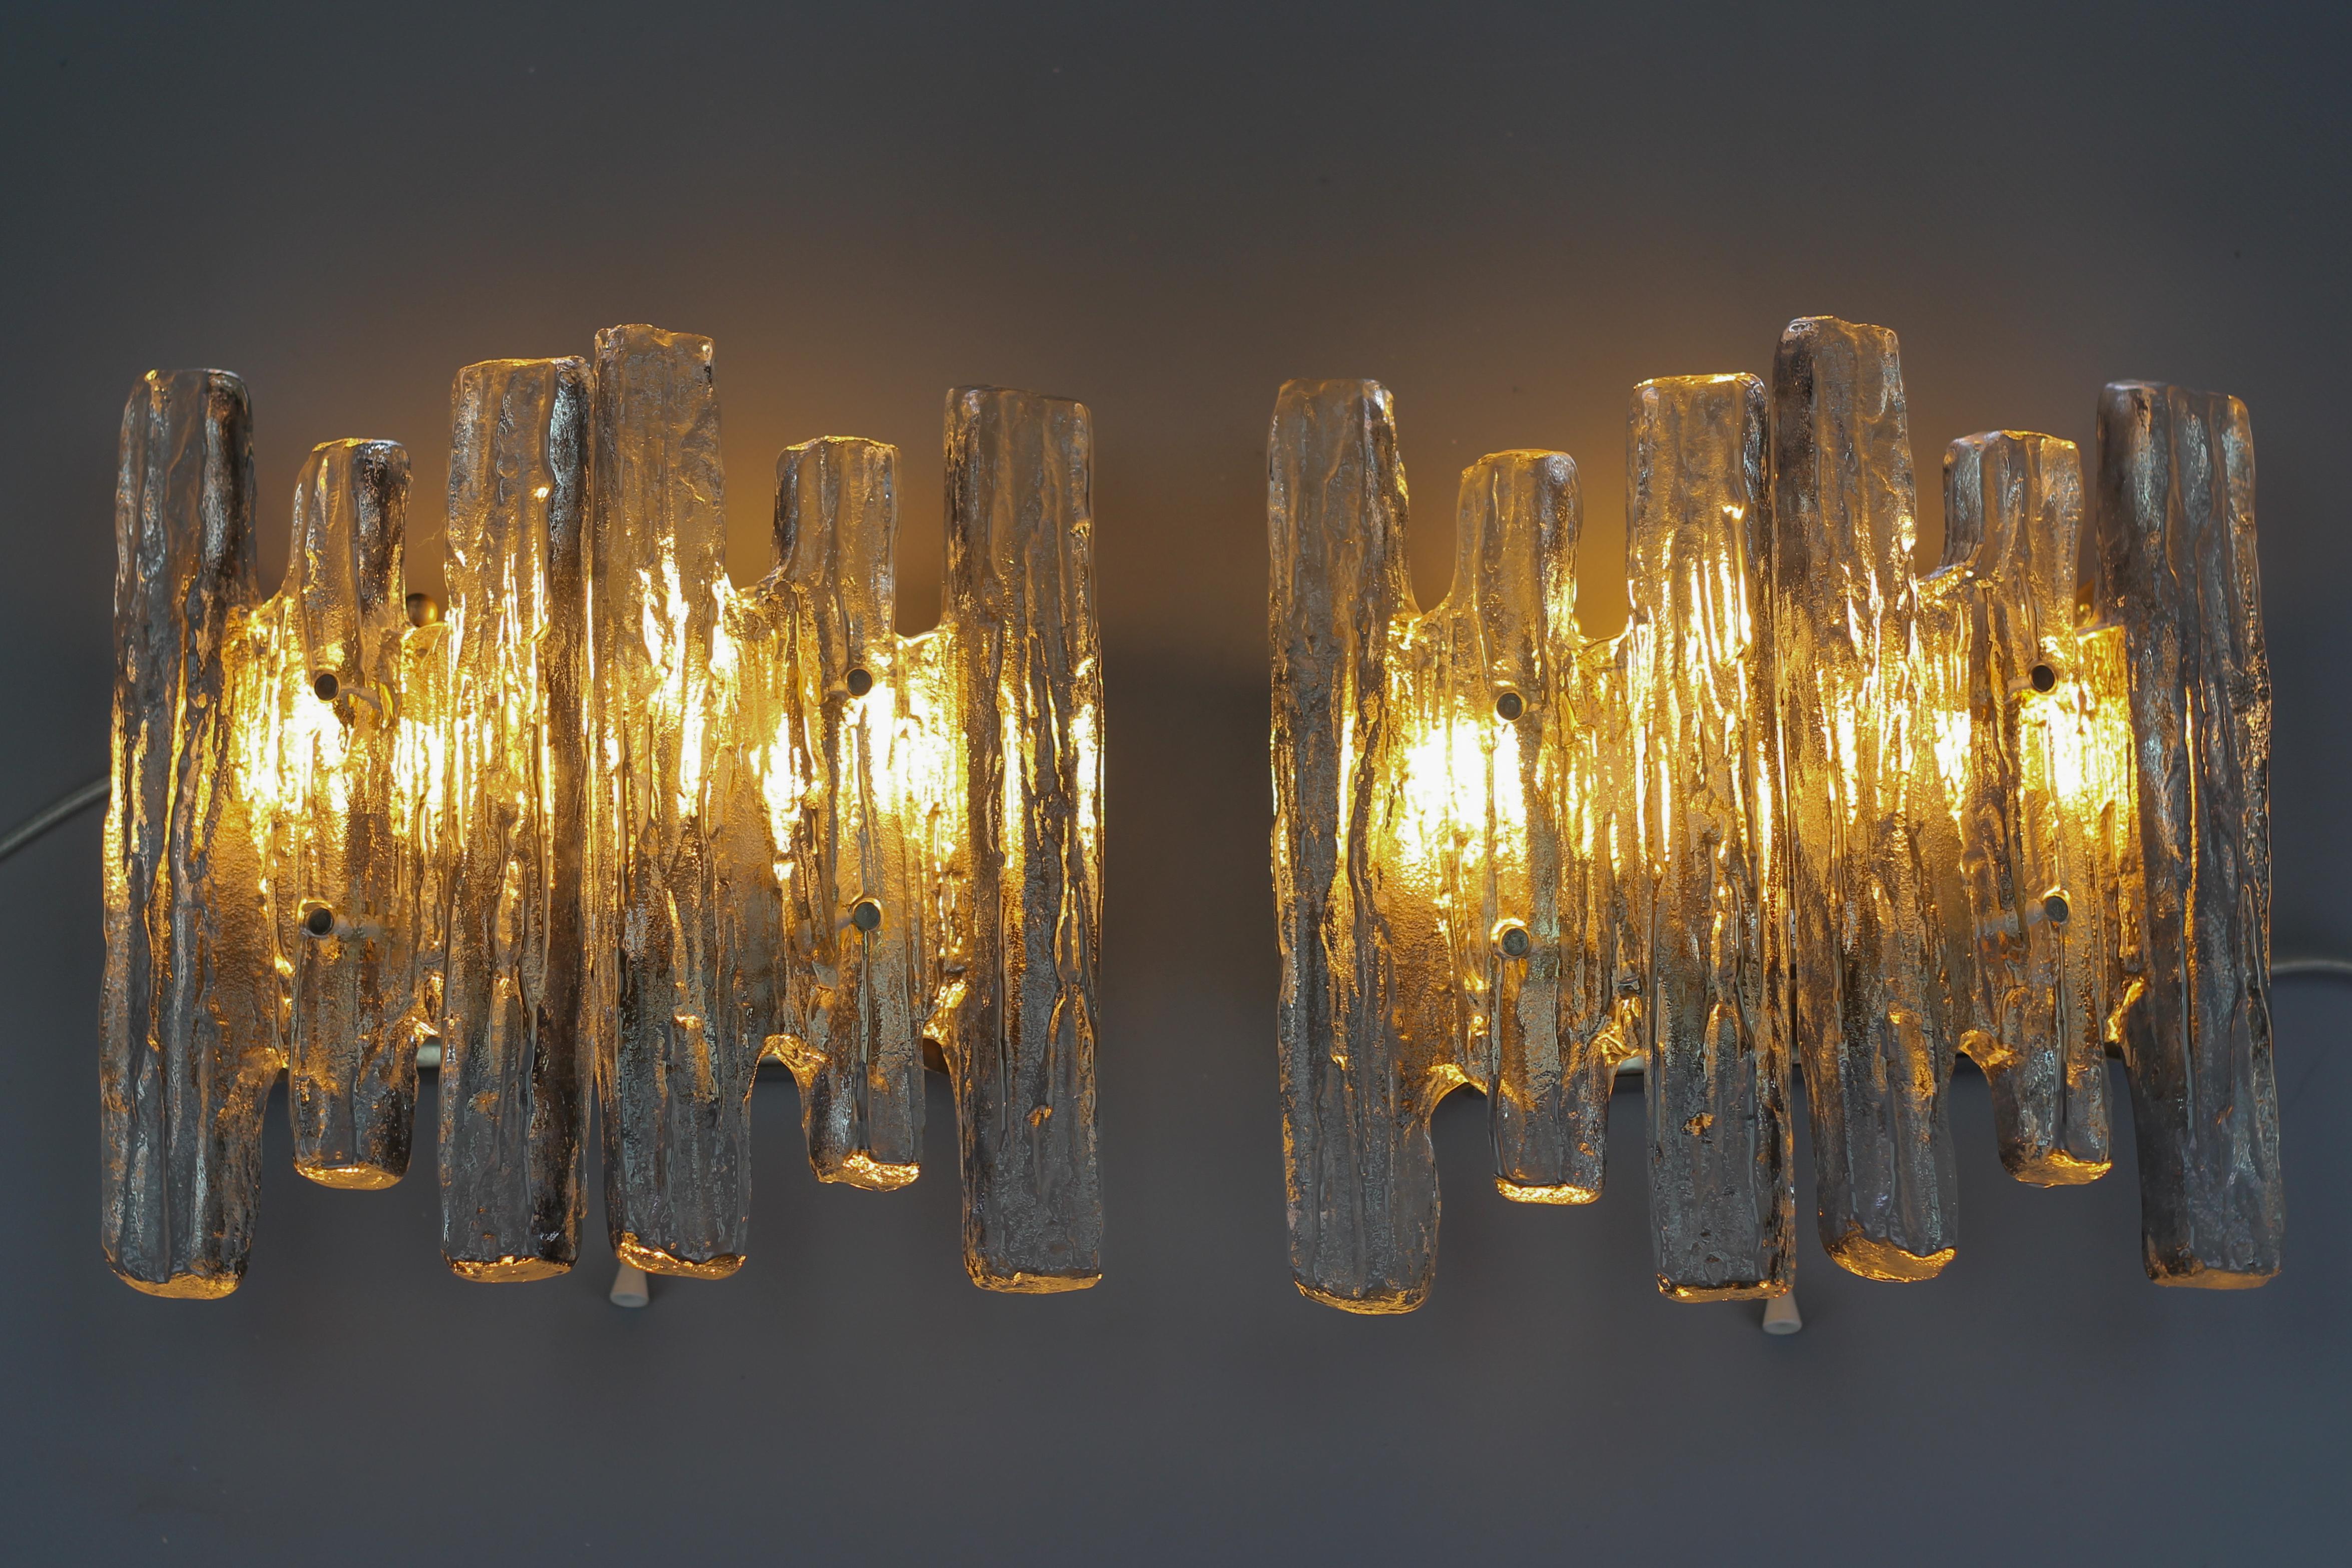 Ein beeindruckendes Paar moderner Wandleuchter aus Eiszapfen-Eisglas von Kalmar, Franken KG, Österreich, etwa in den 1970er Jahren.
Wunderschöne und elegante Wandleuchten mit jeweils zwei schweren Eisglasblöcken, vernickelter Stahlrückwand mit drei